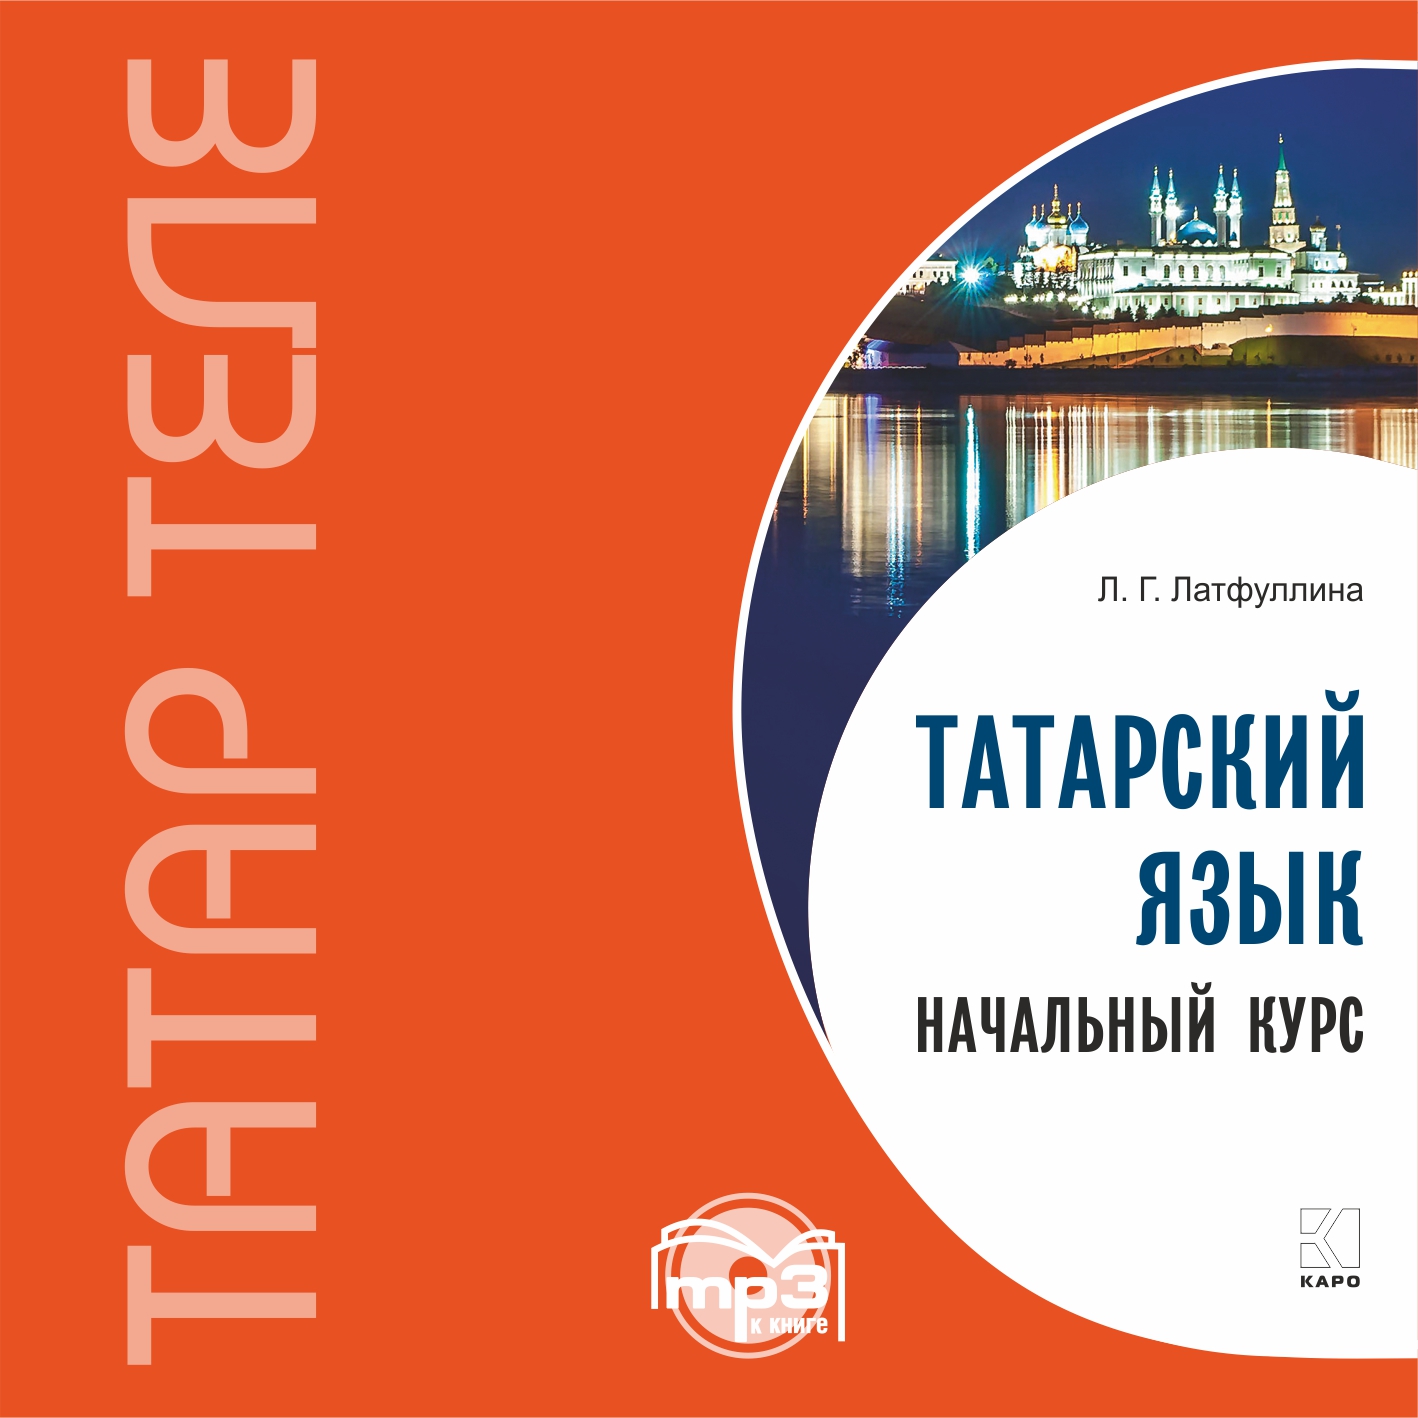 Татарский язык. Начальный курс. MP3